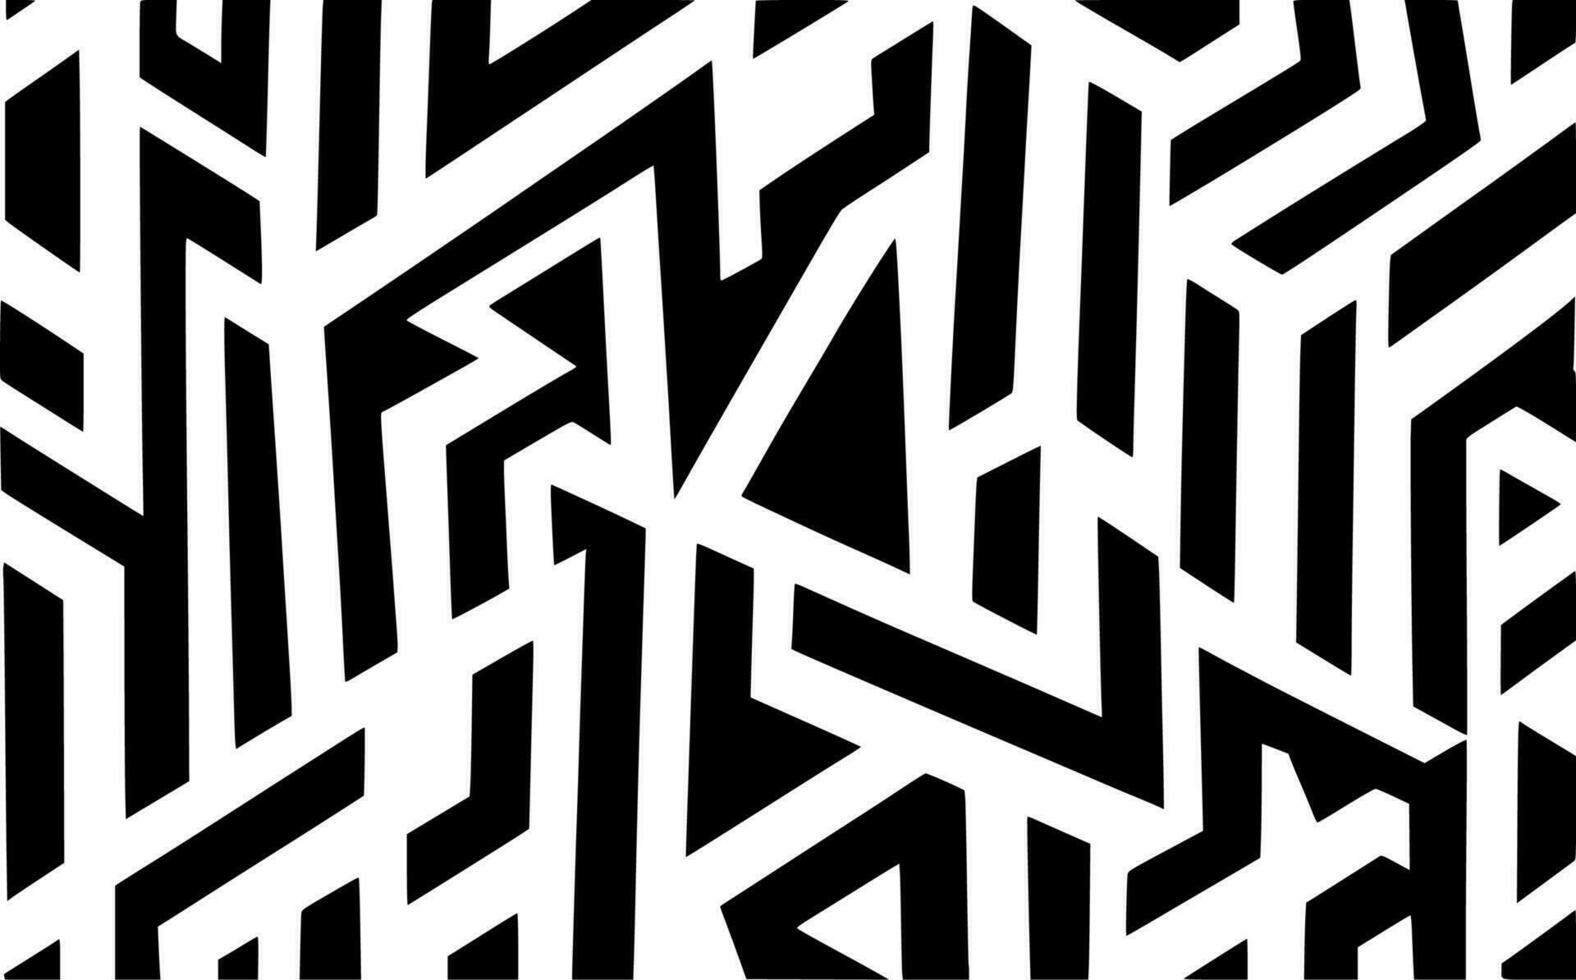 blanco y negro de fondo abstracto vector